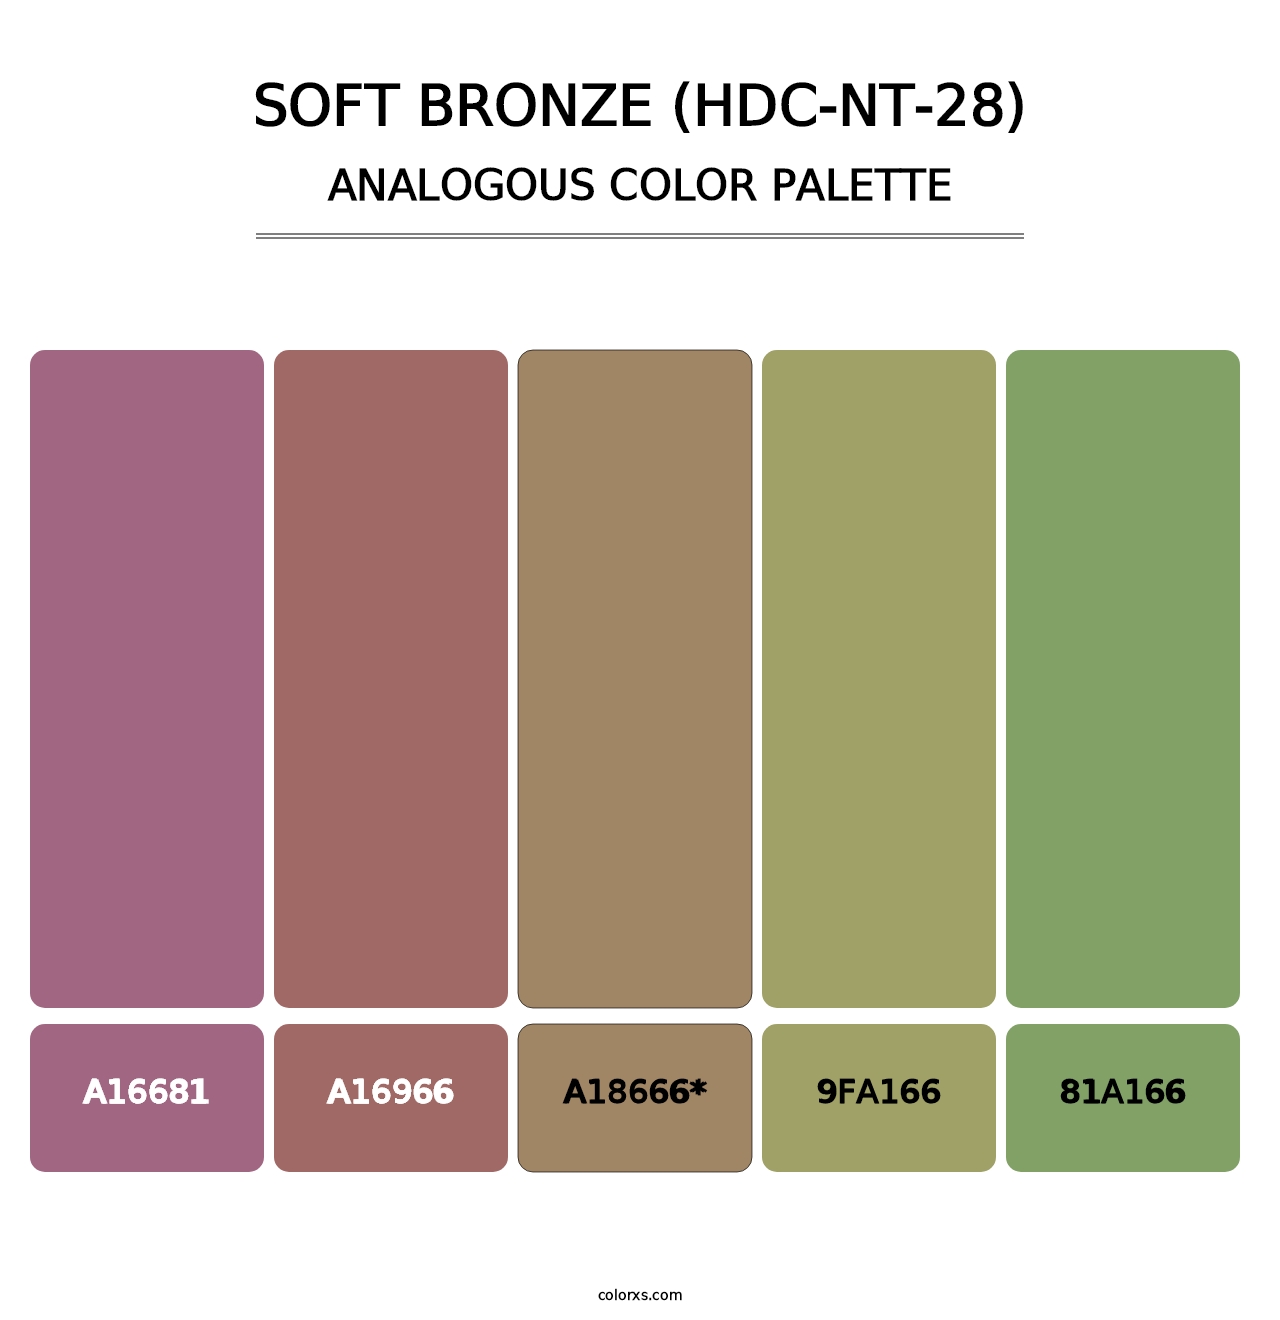 Soft Bronze (HDC-NT-28) - Analogous Color Palette